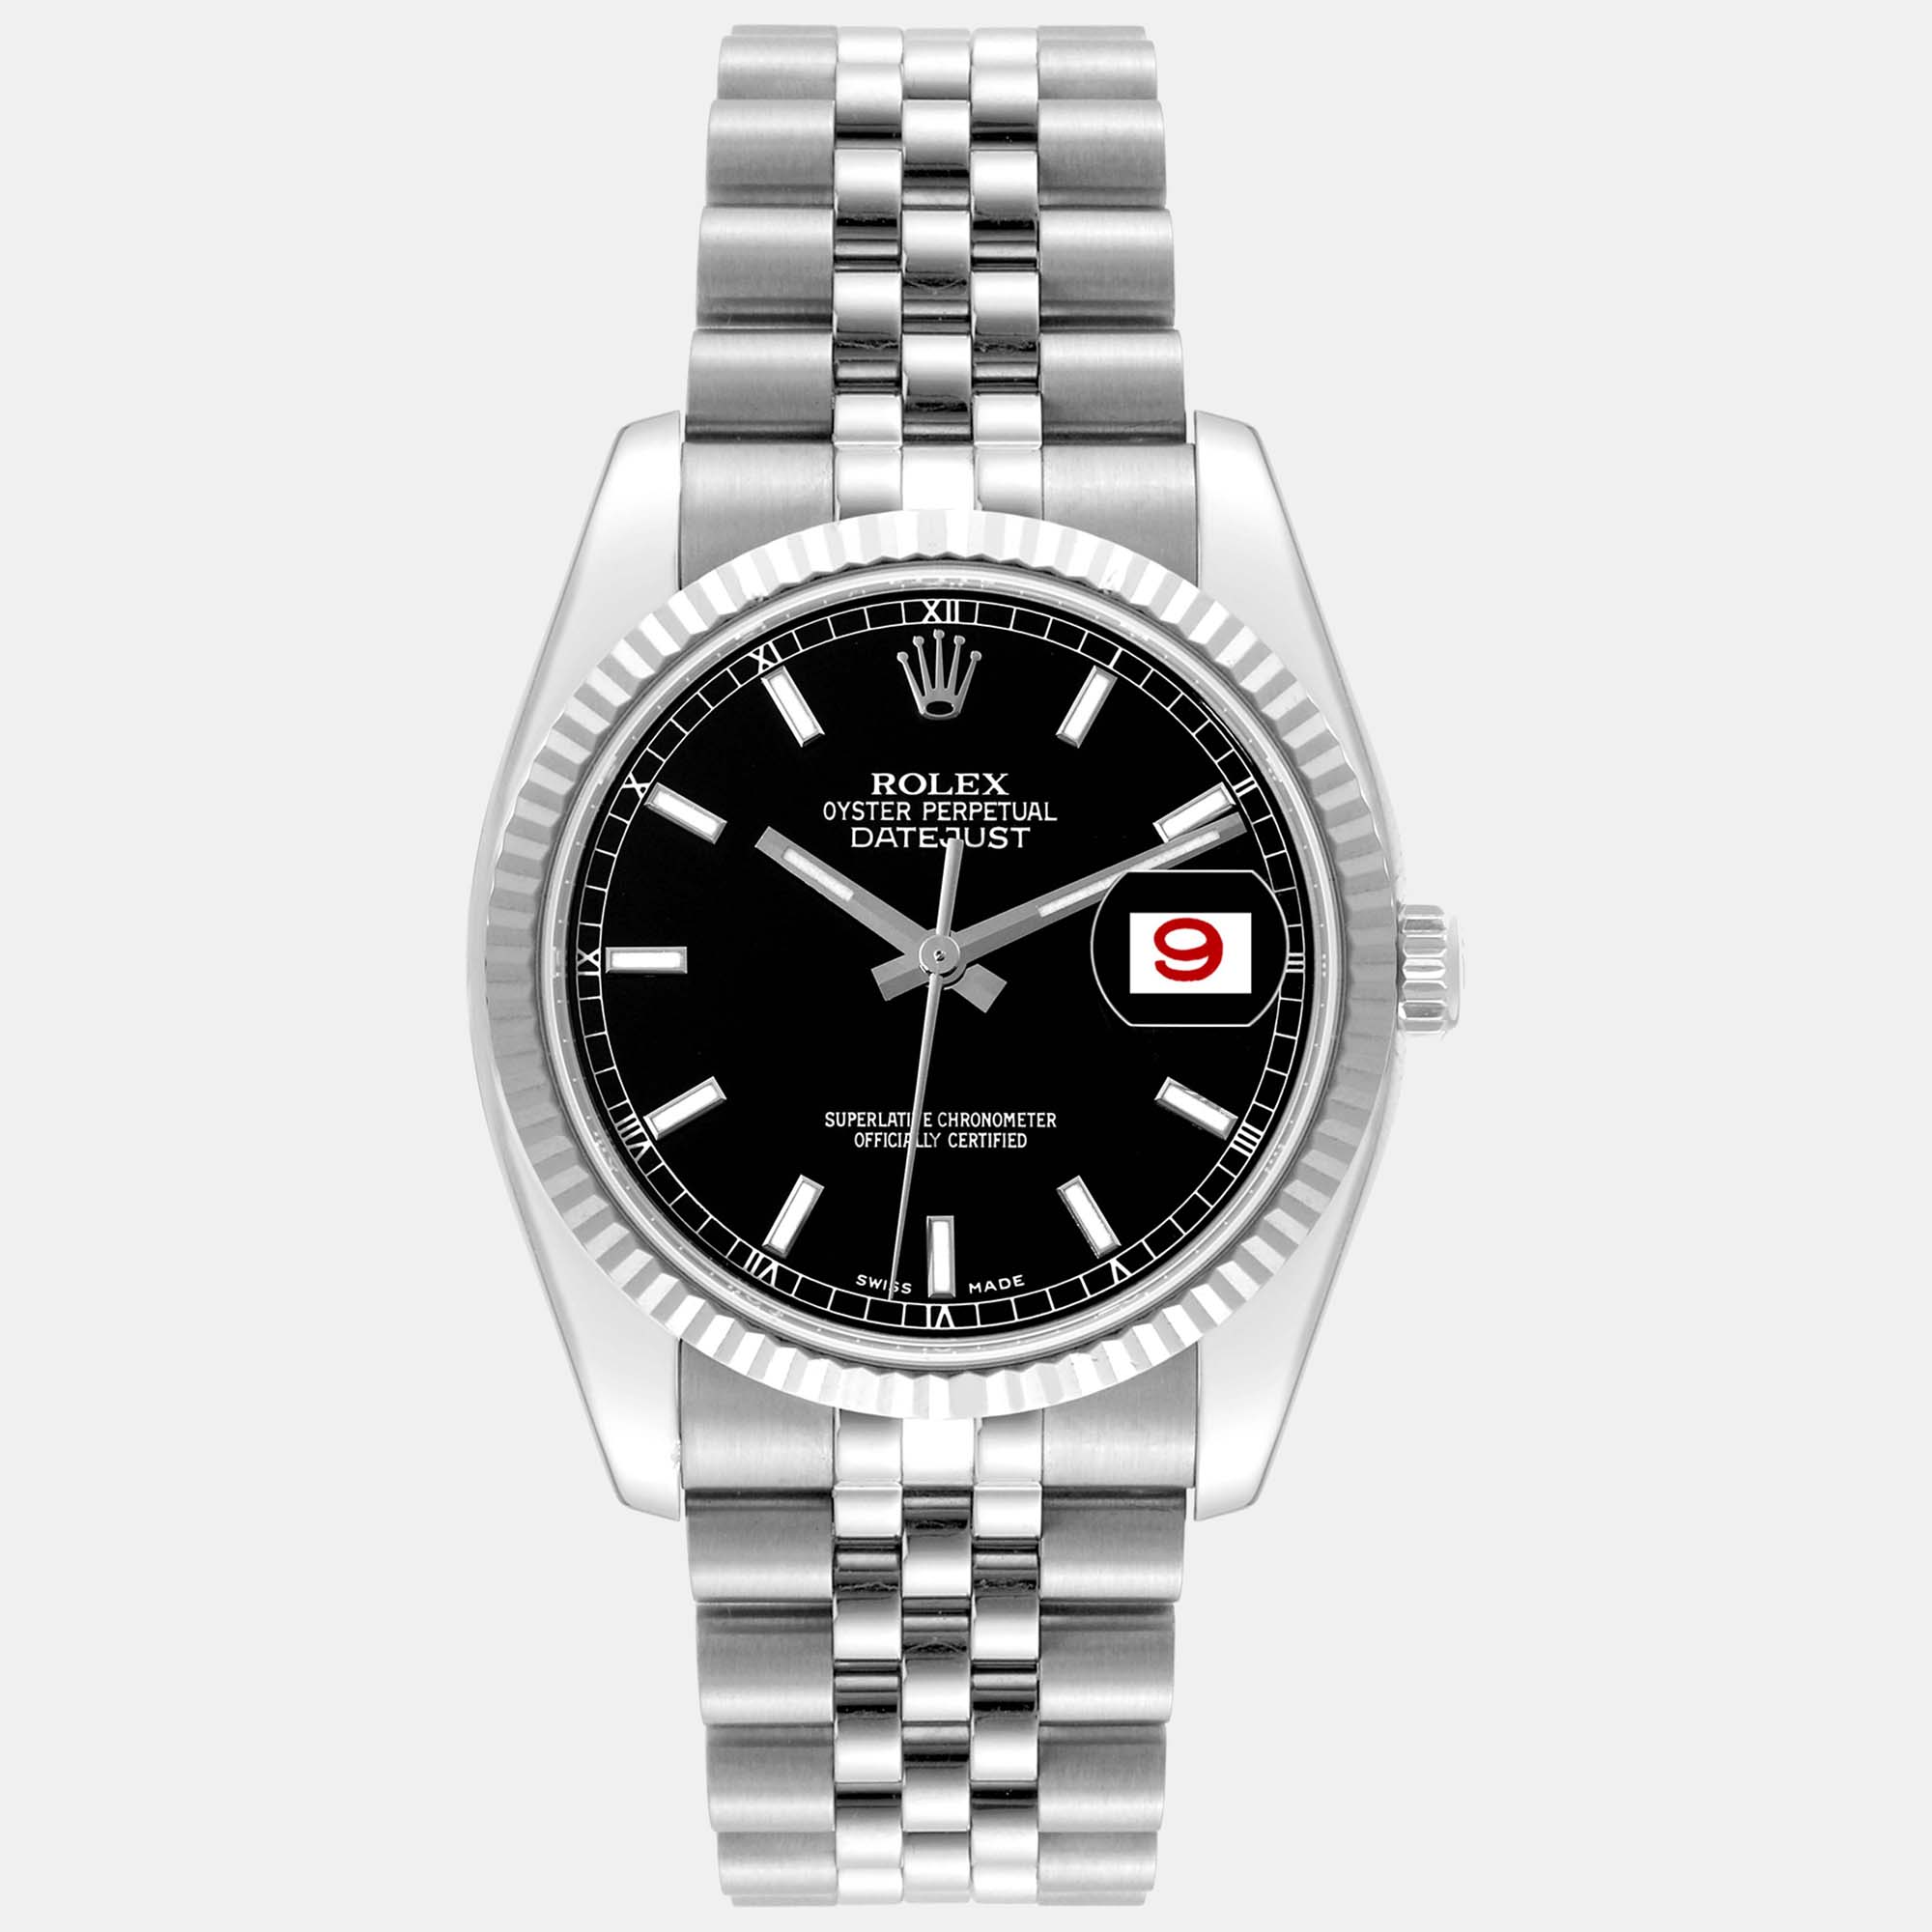 Rolex datejust steel white gold black dial men's watch 36 mm